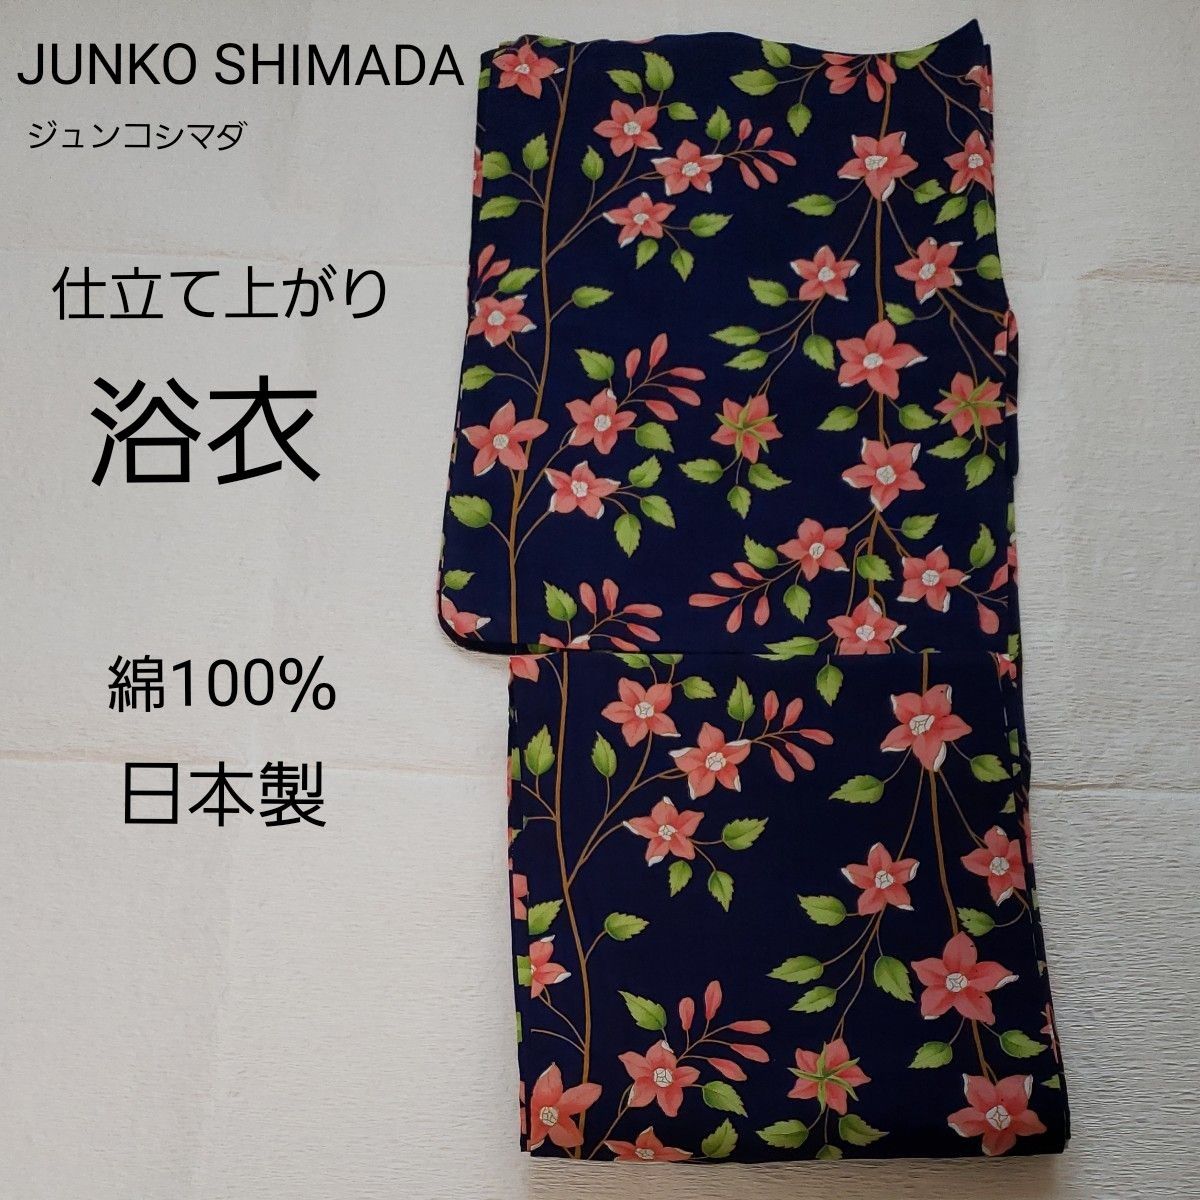 JUNKO SHIMADA. 百合の花柄の雨傘 - 小物